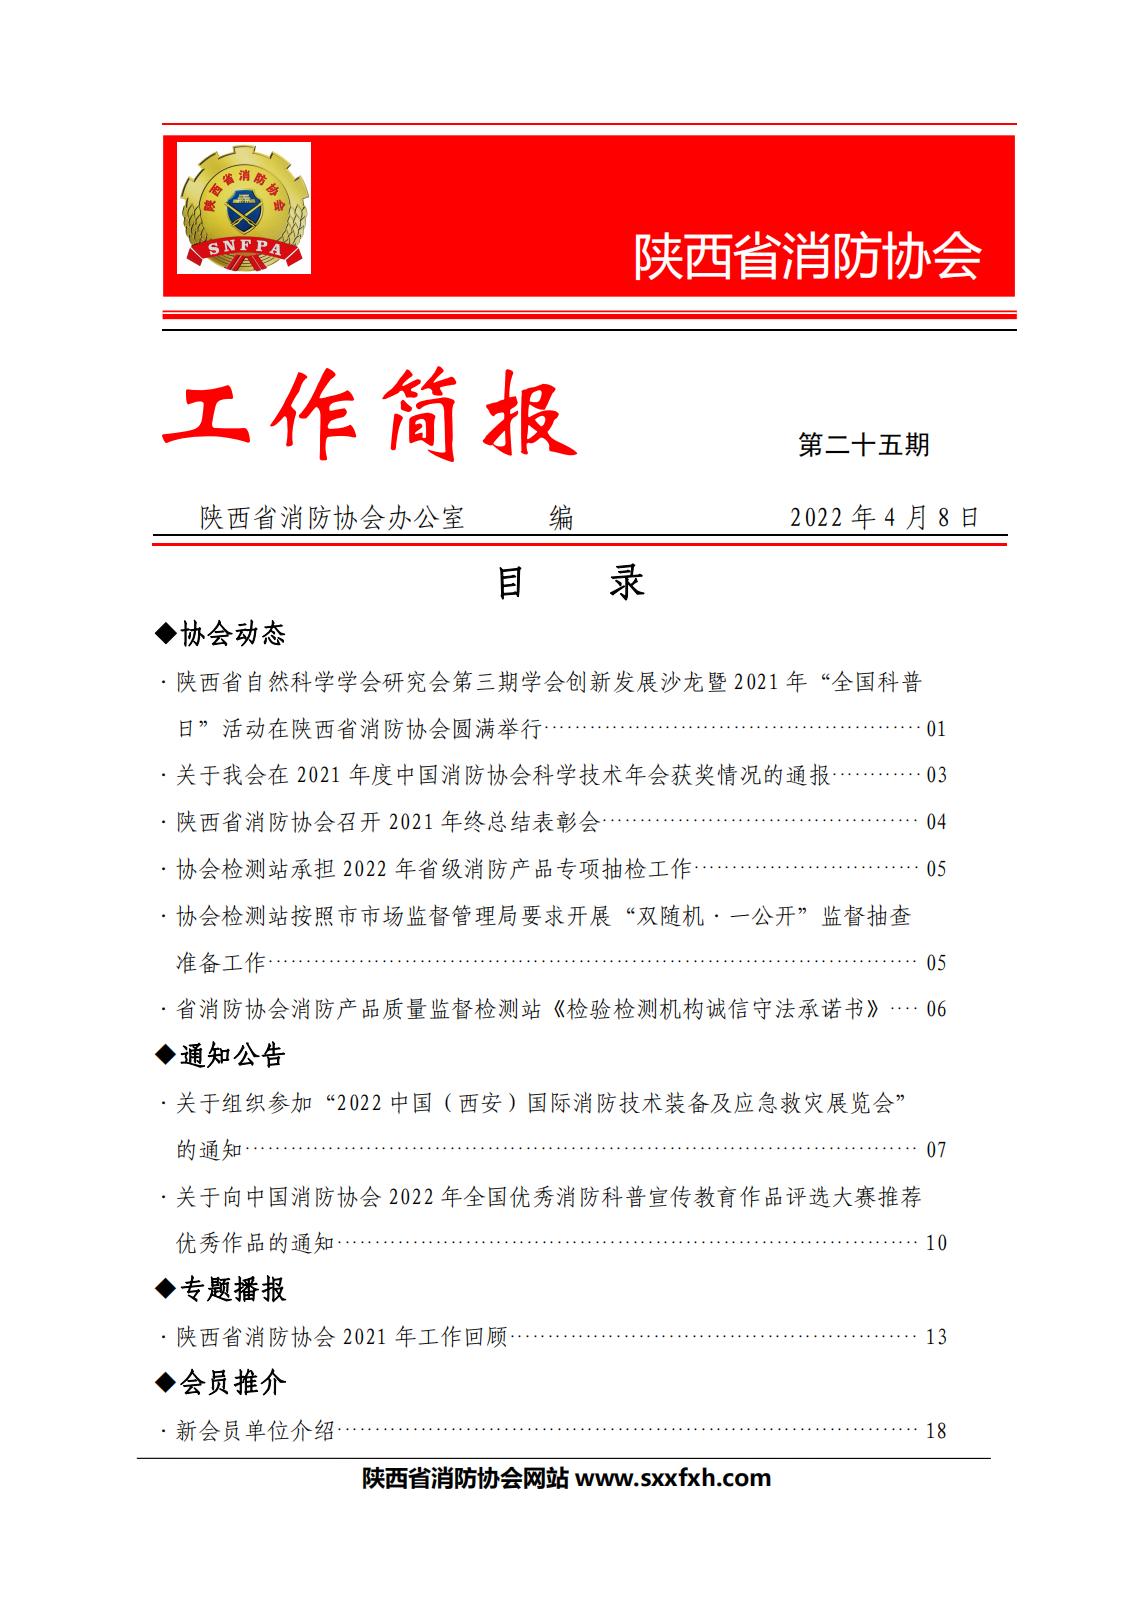 陕西省消防协会第二十五期工作简报